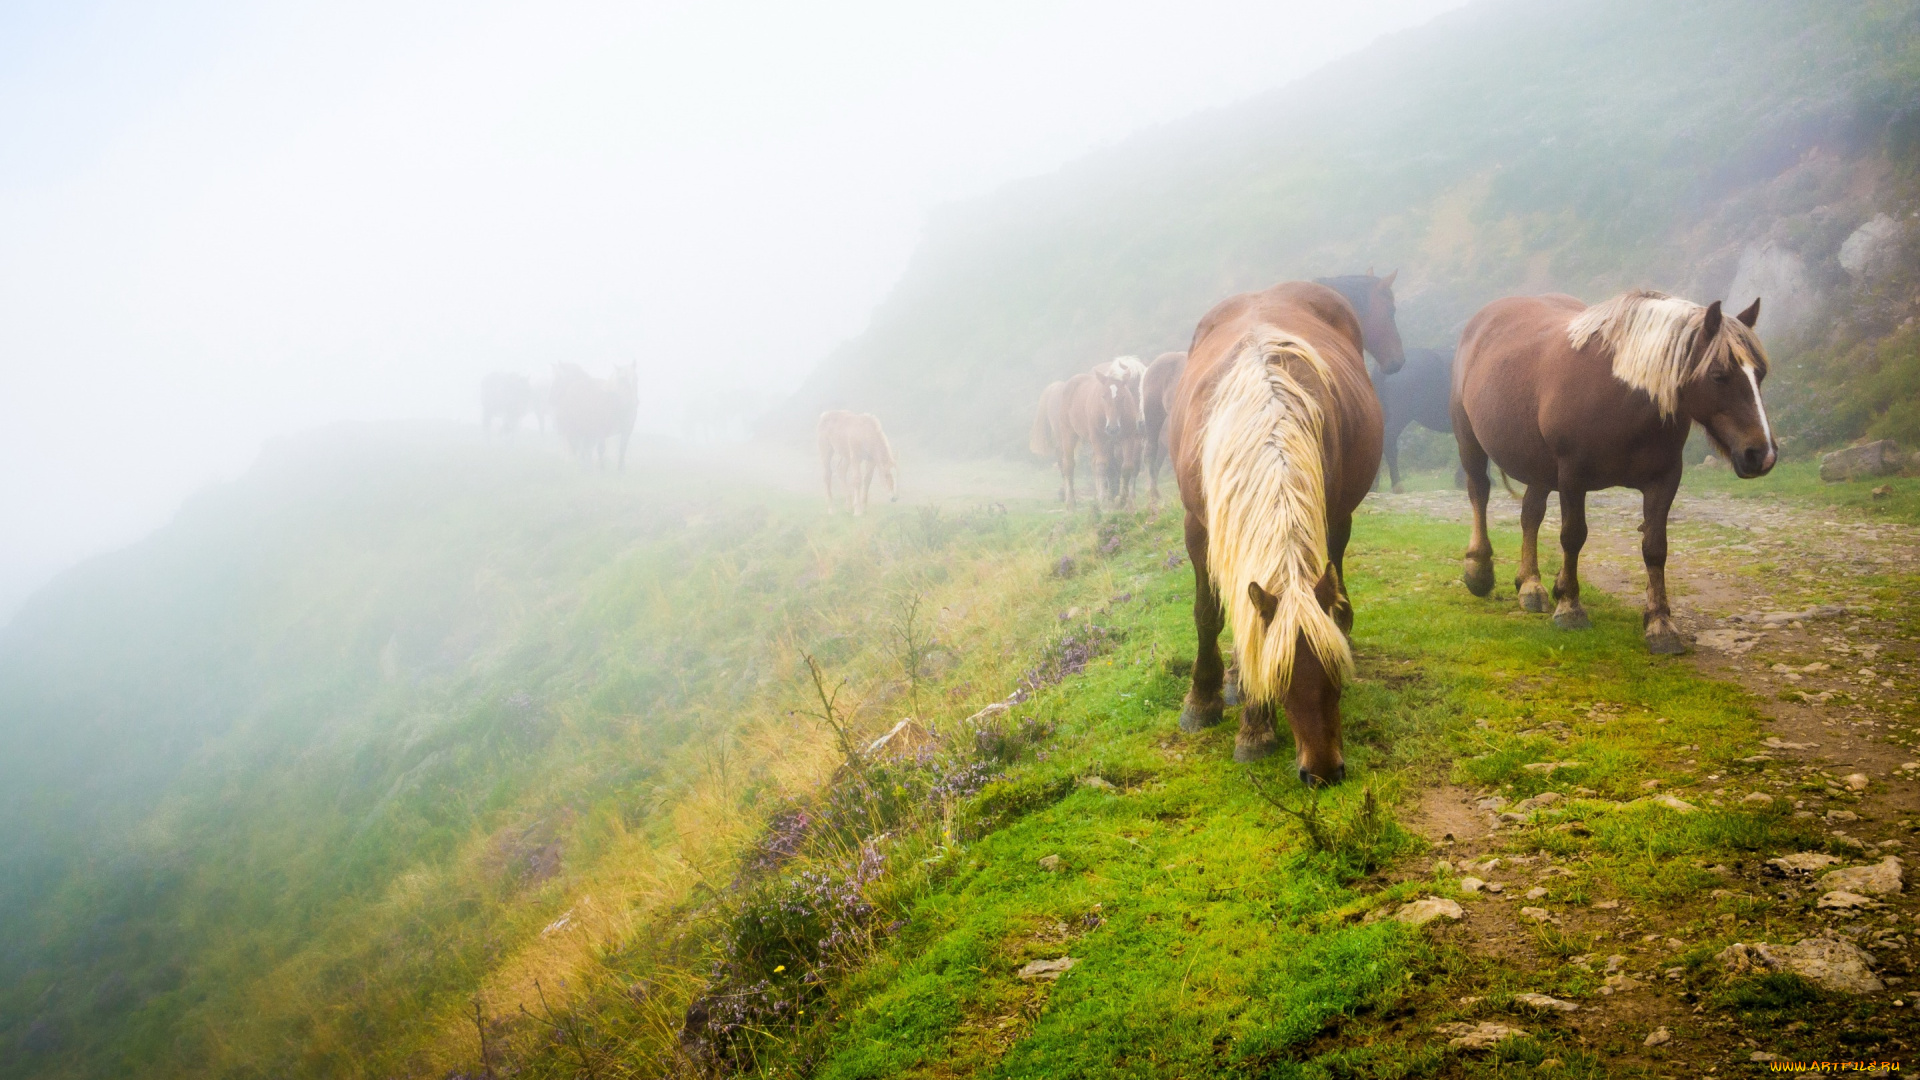 животные, лошади, пейзаж, лошадь, трава, пасутся, табун, туман, природа, конь, зелень, настроение, кони, холм, дорога, склон, утро